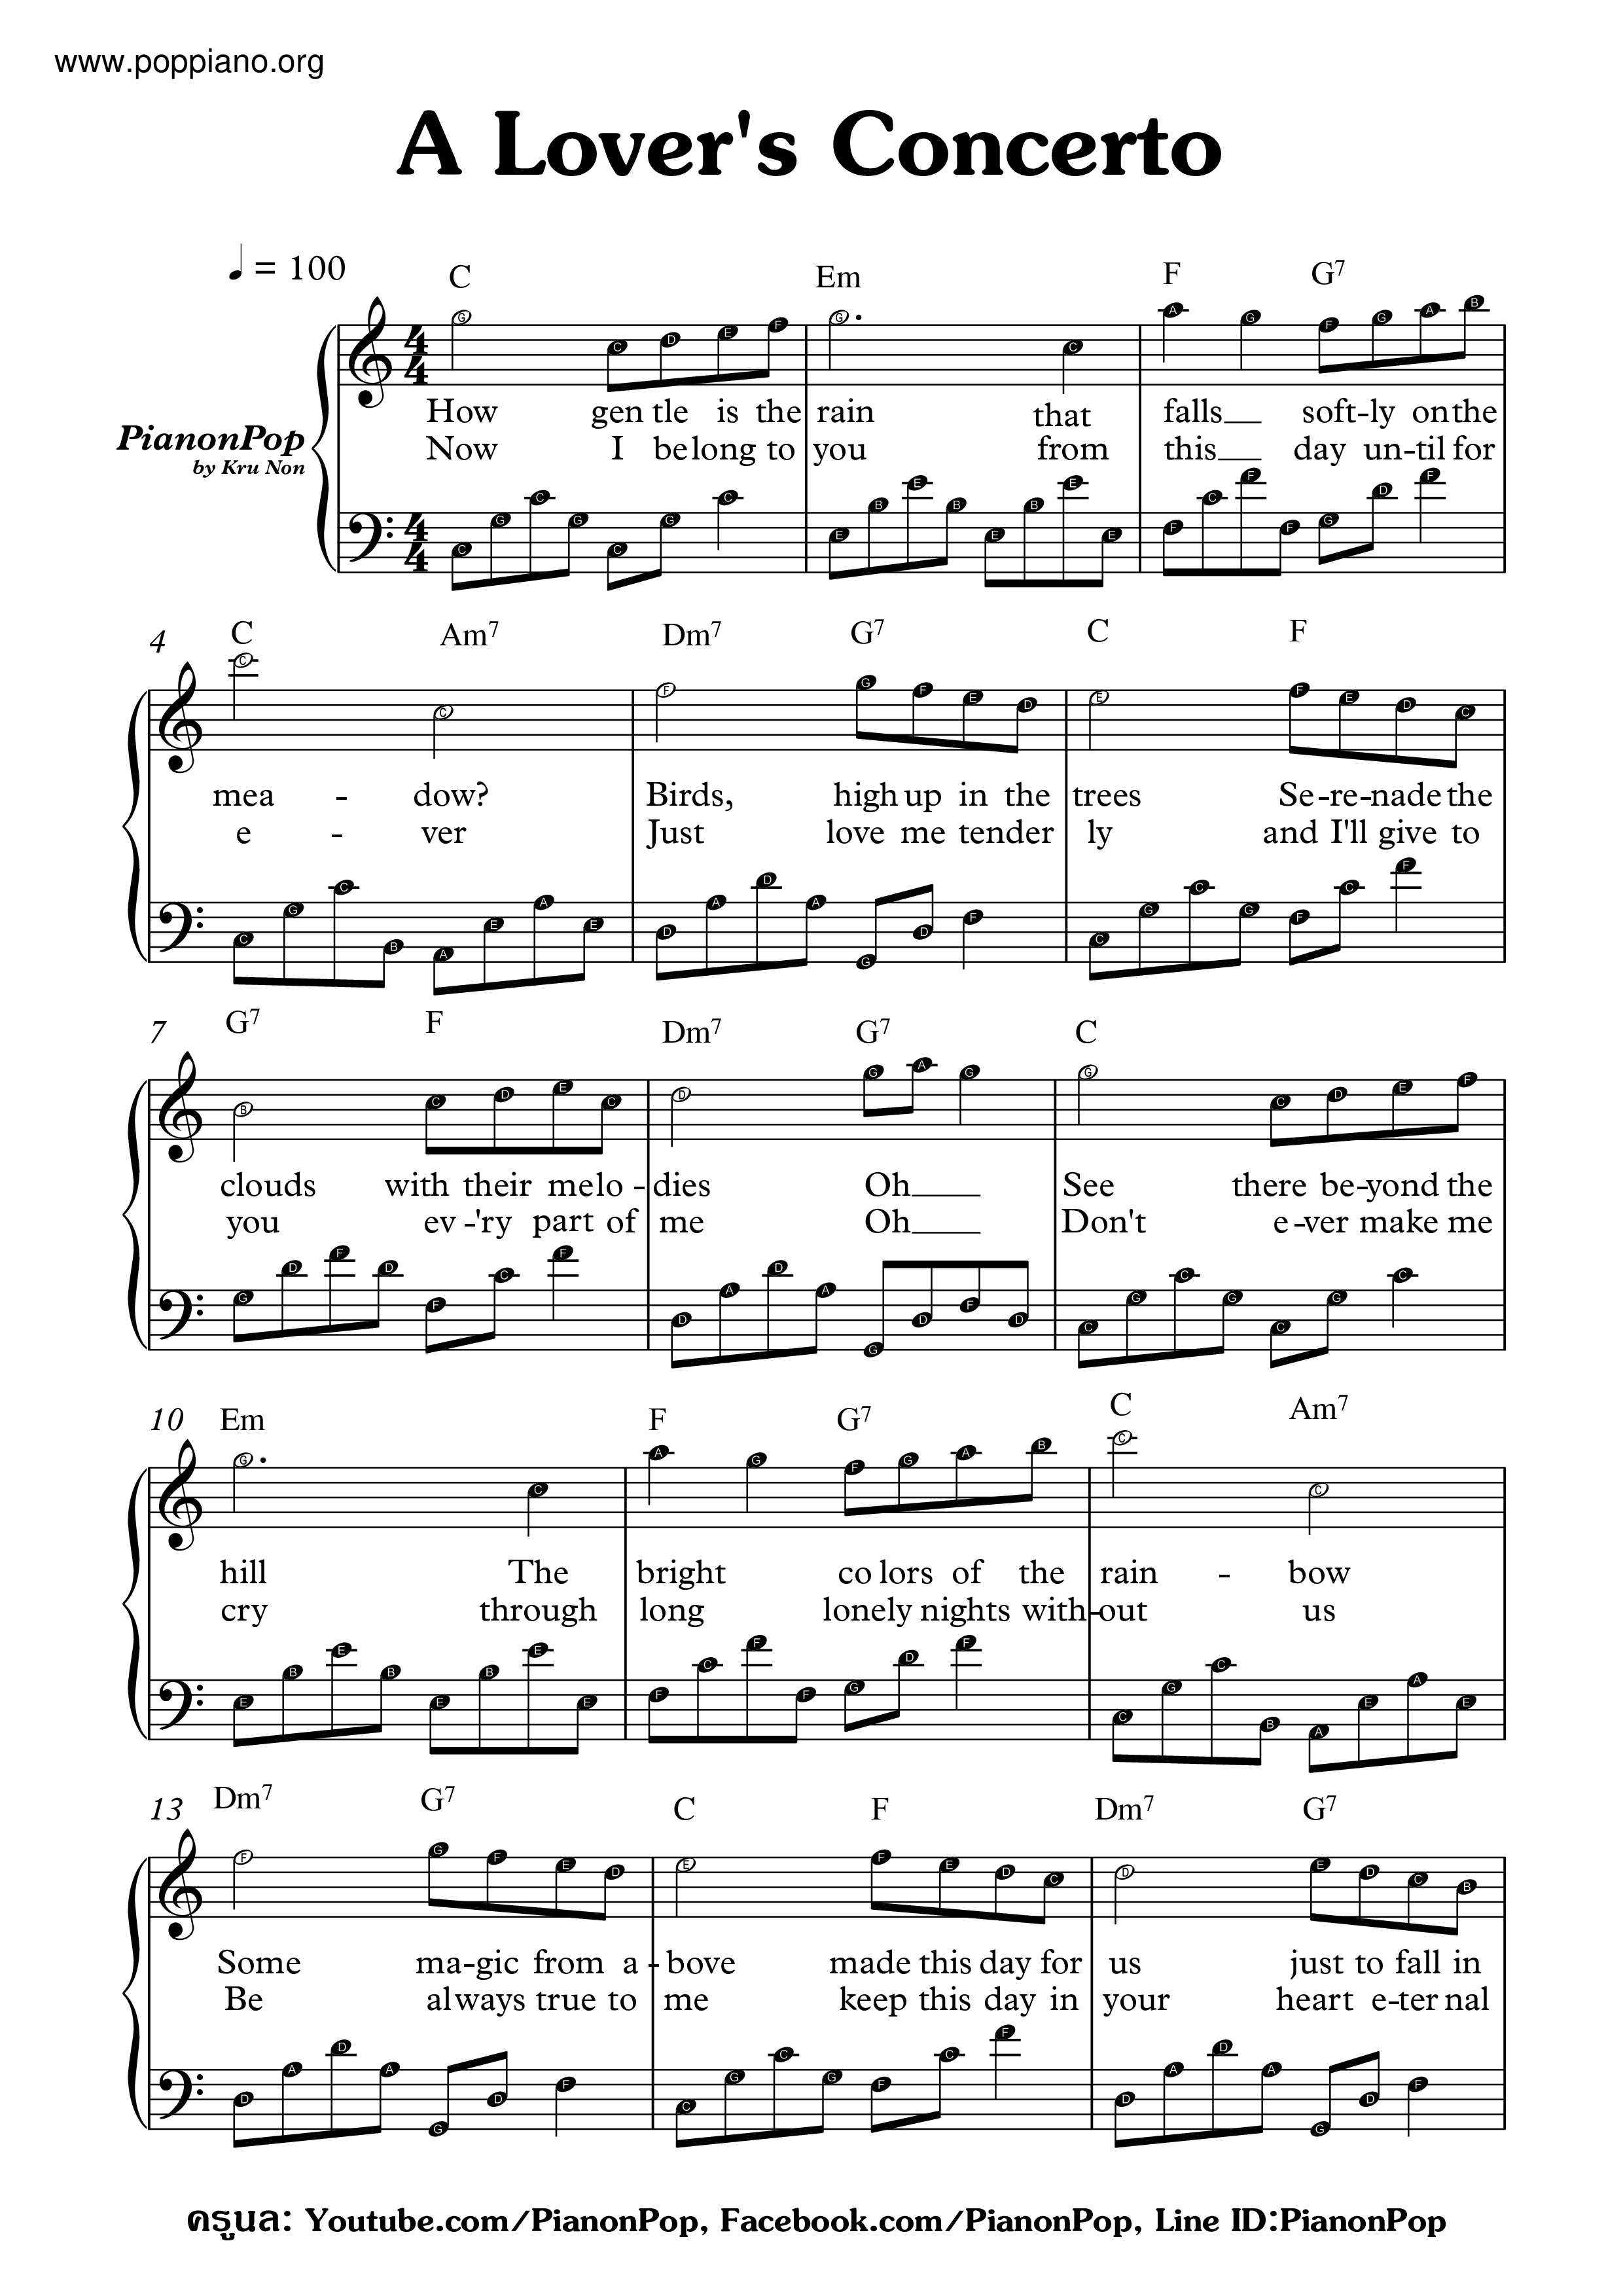 Lover's Concerto Score